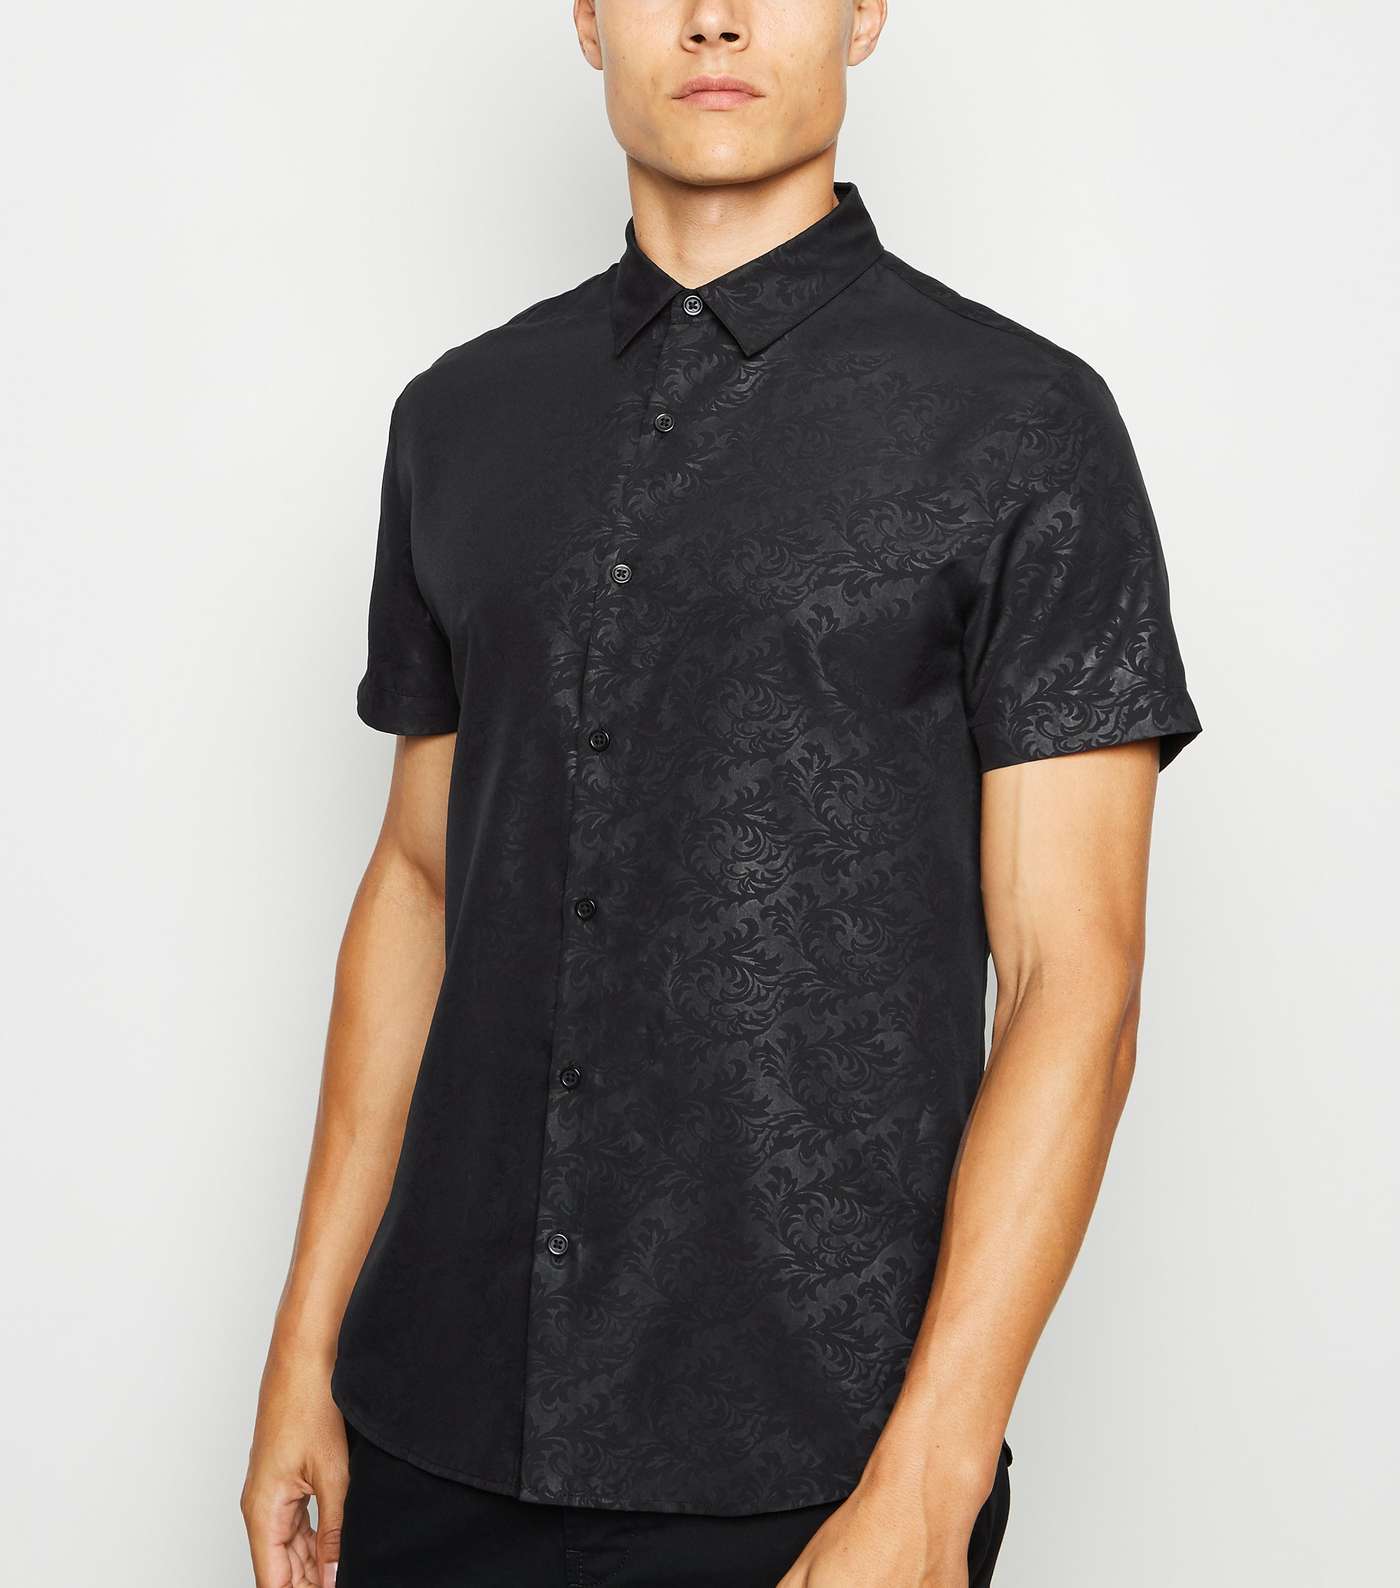 Black Satin Jacquard Short Sleeve Shirt